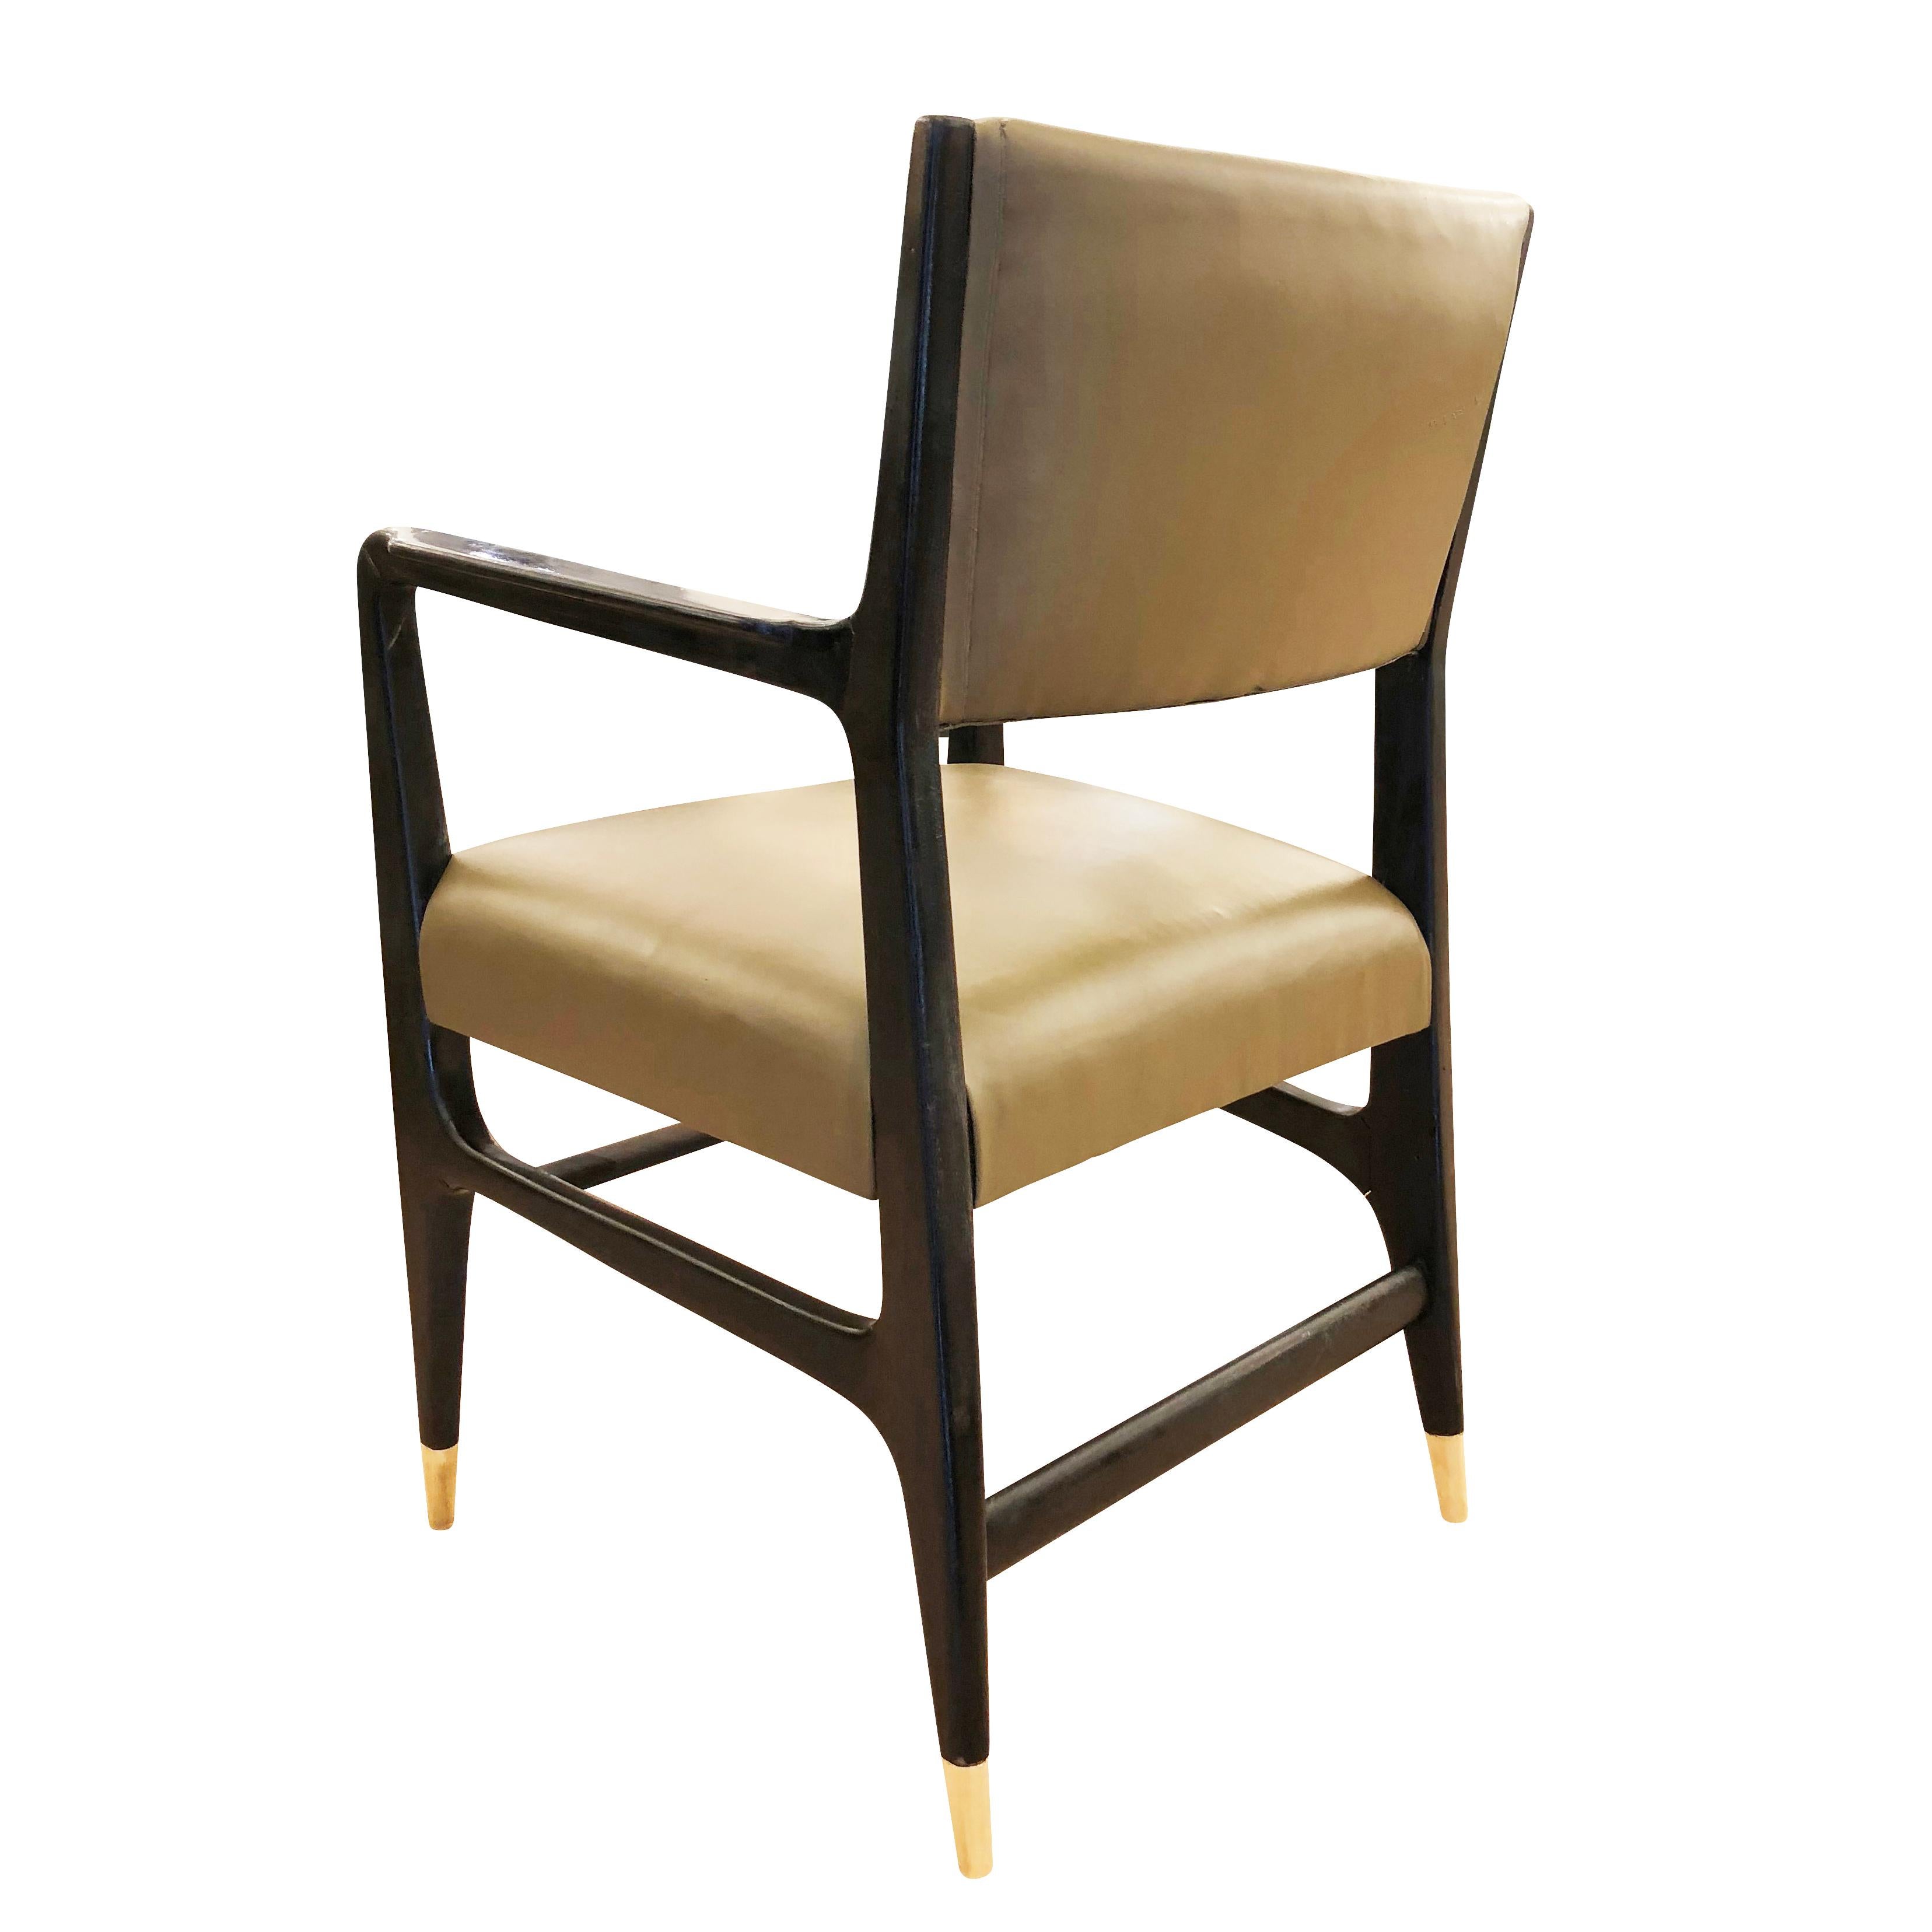 Sessel von Gio Ponti, hergestellt von Cassina in den 1950er Jahren. Originaler Zustand mit ebonisiertem Rahmen, grünem Lederbezug und Messingfüßen.

Zustand: Guter Vintage-Zustand, geringfügige alters- und gebrauchsbedingte Abnutzung.

Maße: